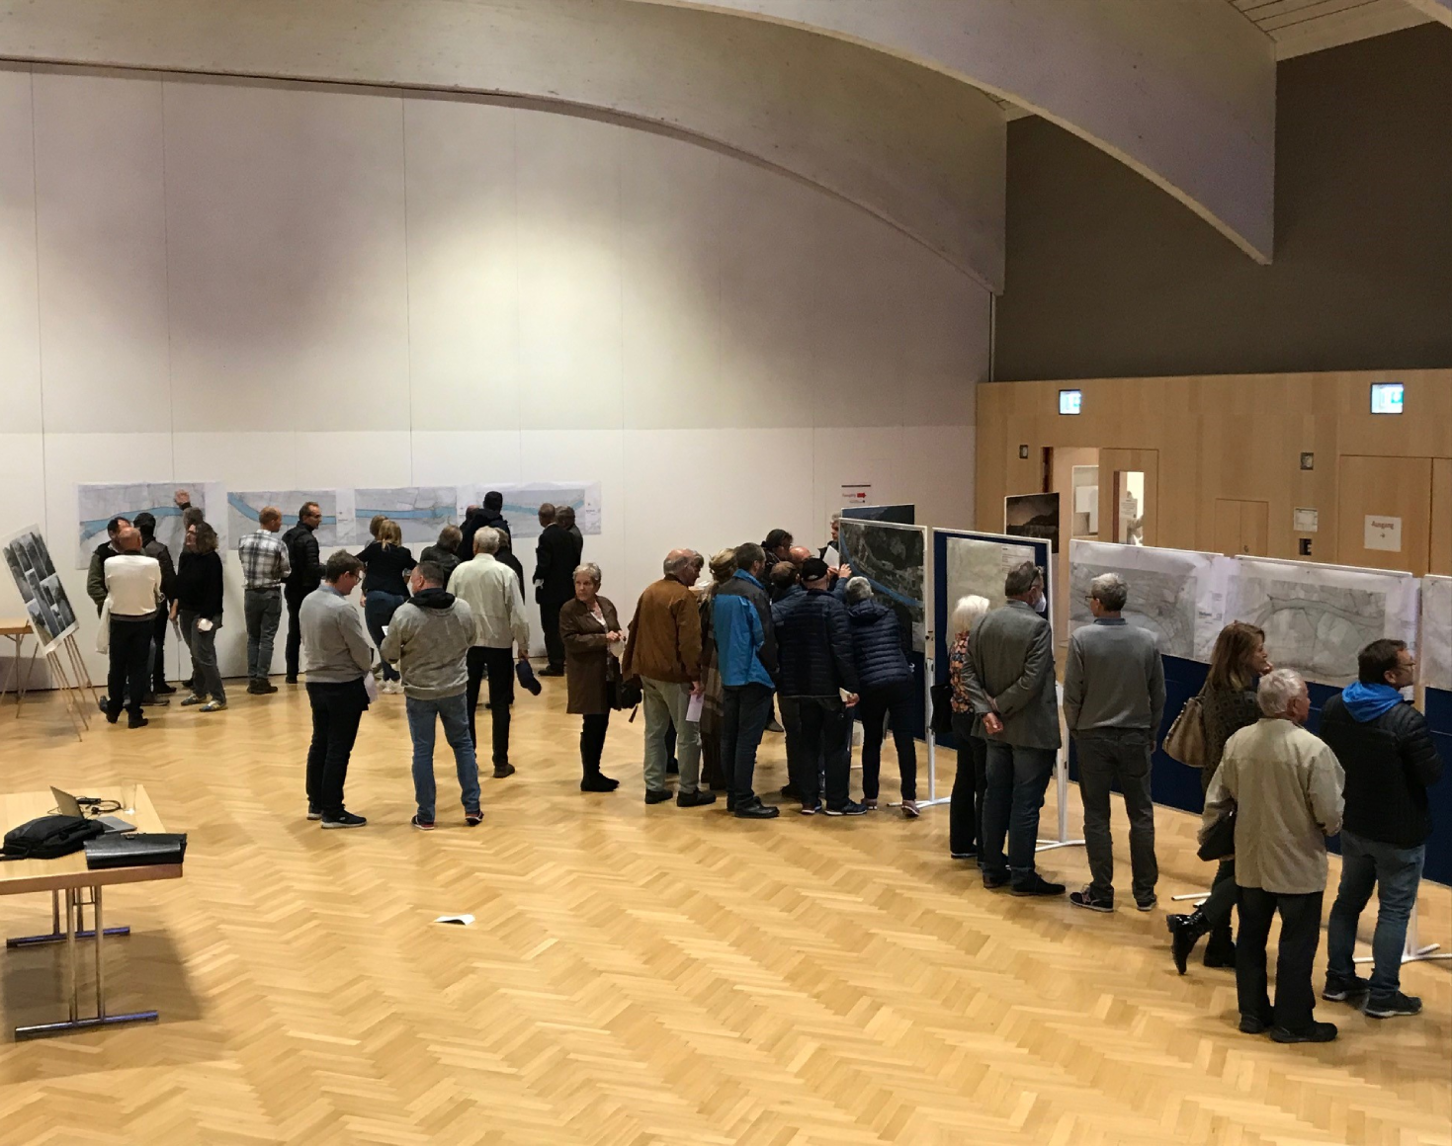 Bild von einem Informationstag zum Murkraftwerksprojekt Gratkorn mit Anrainerinnen und Anrainern, die sich in einem Raum mit Holzboden versammelt haben, um Ausstellungen und Informationsplakate zu betrachten.